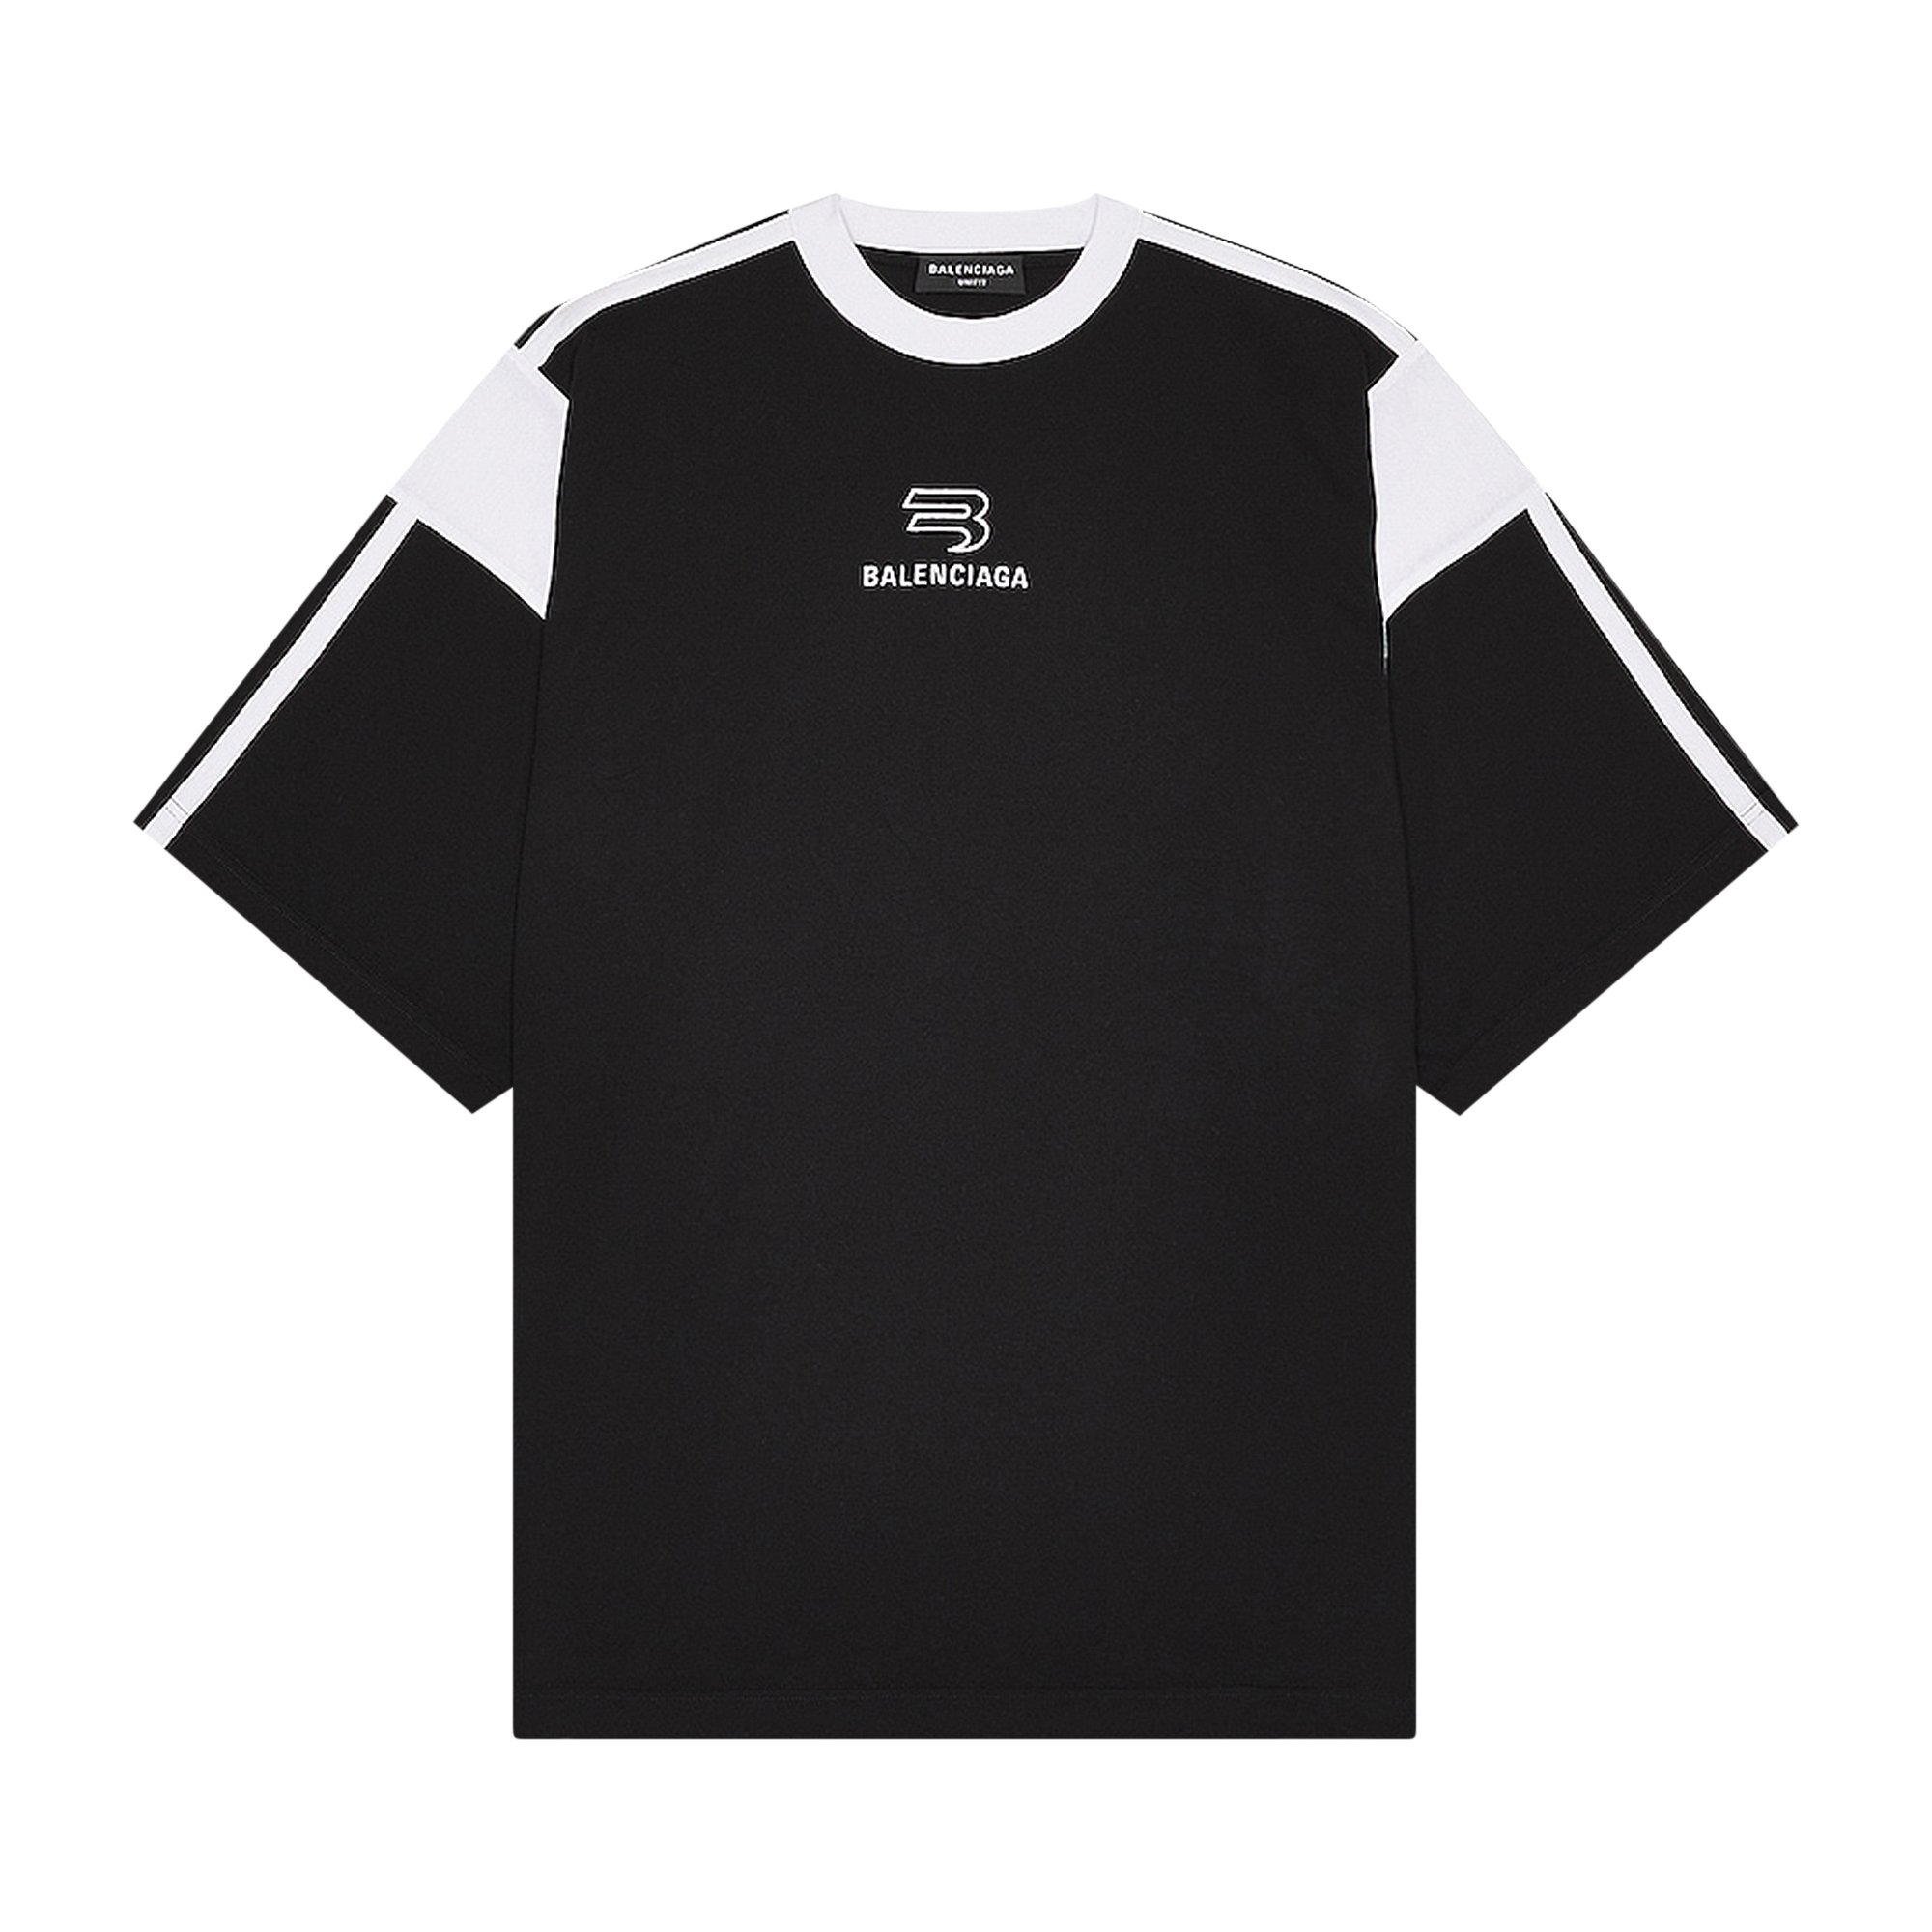 Buy Balenciaga Sporty B T-Shirt Boxy Fit 'Black/White' - 699182 